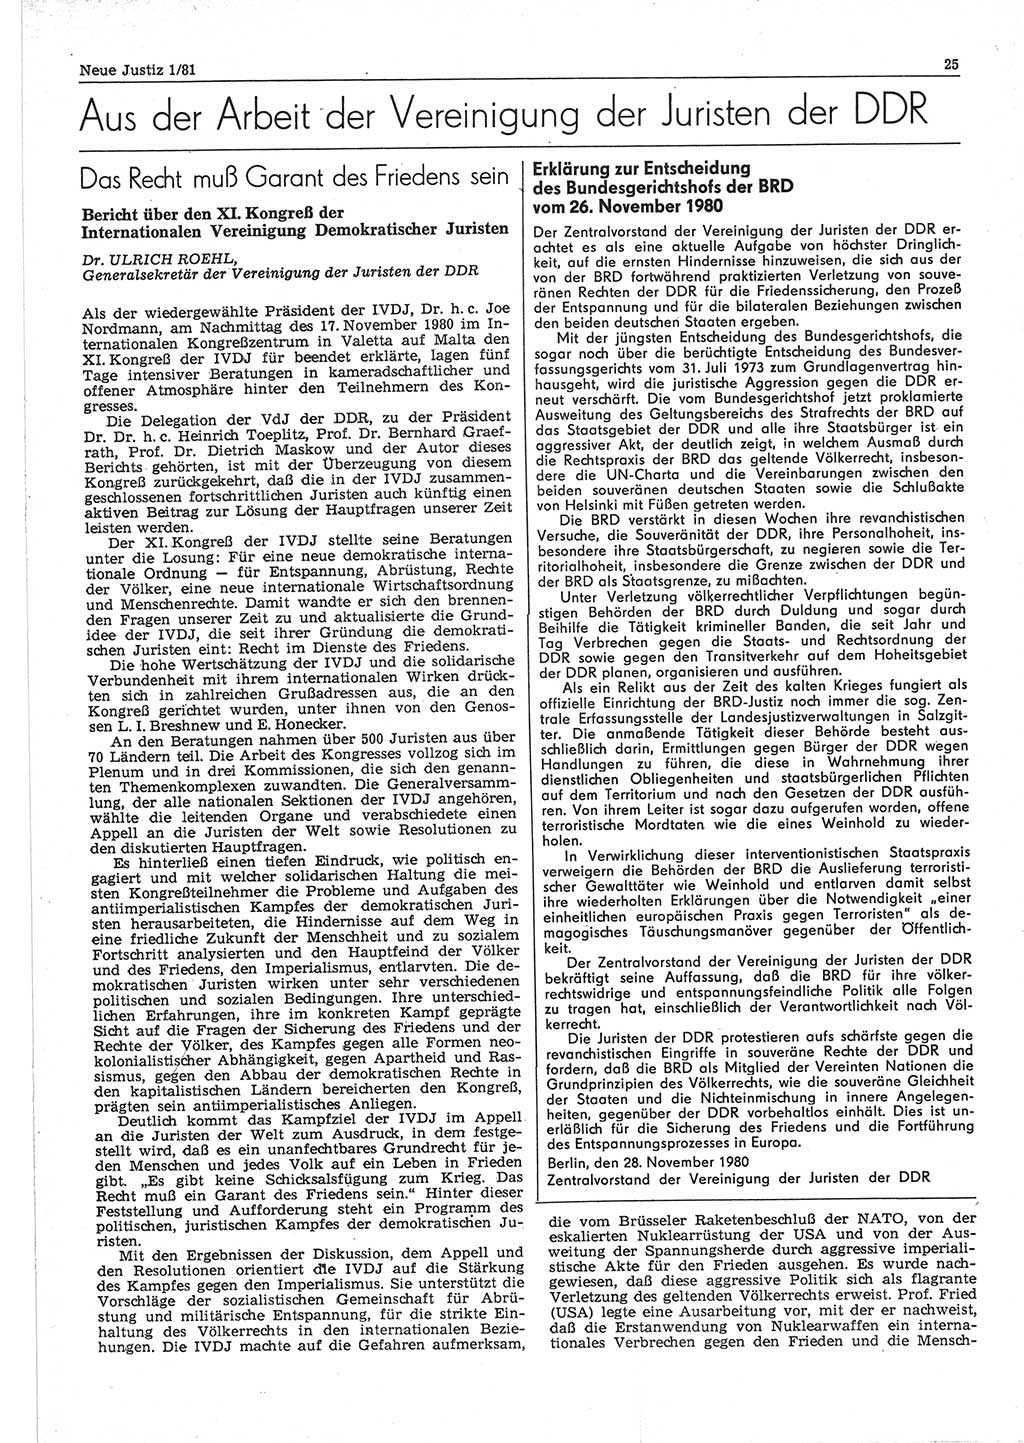 Neue Justiz (NJ), Zeitschrift für sozialistisches Recht und Gesetzlichkeit [Deutsche Demokratische Republik (DDR)], 35. Jahrgang 1981, Seite 25 (NJ DDR 1981, S. 25)